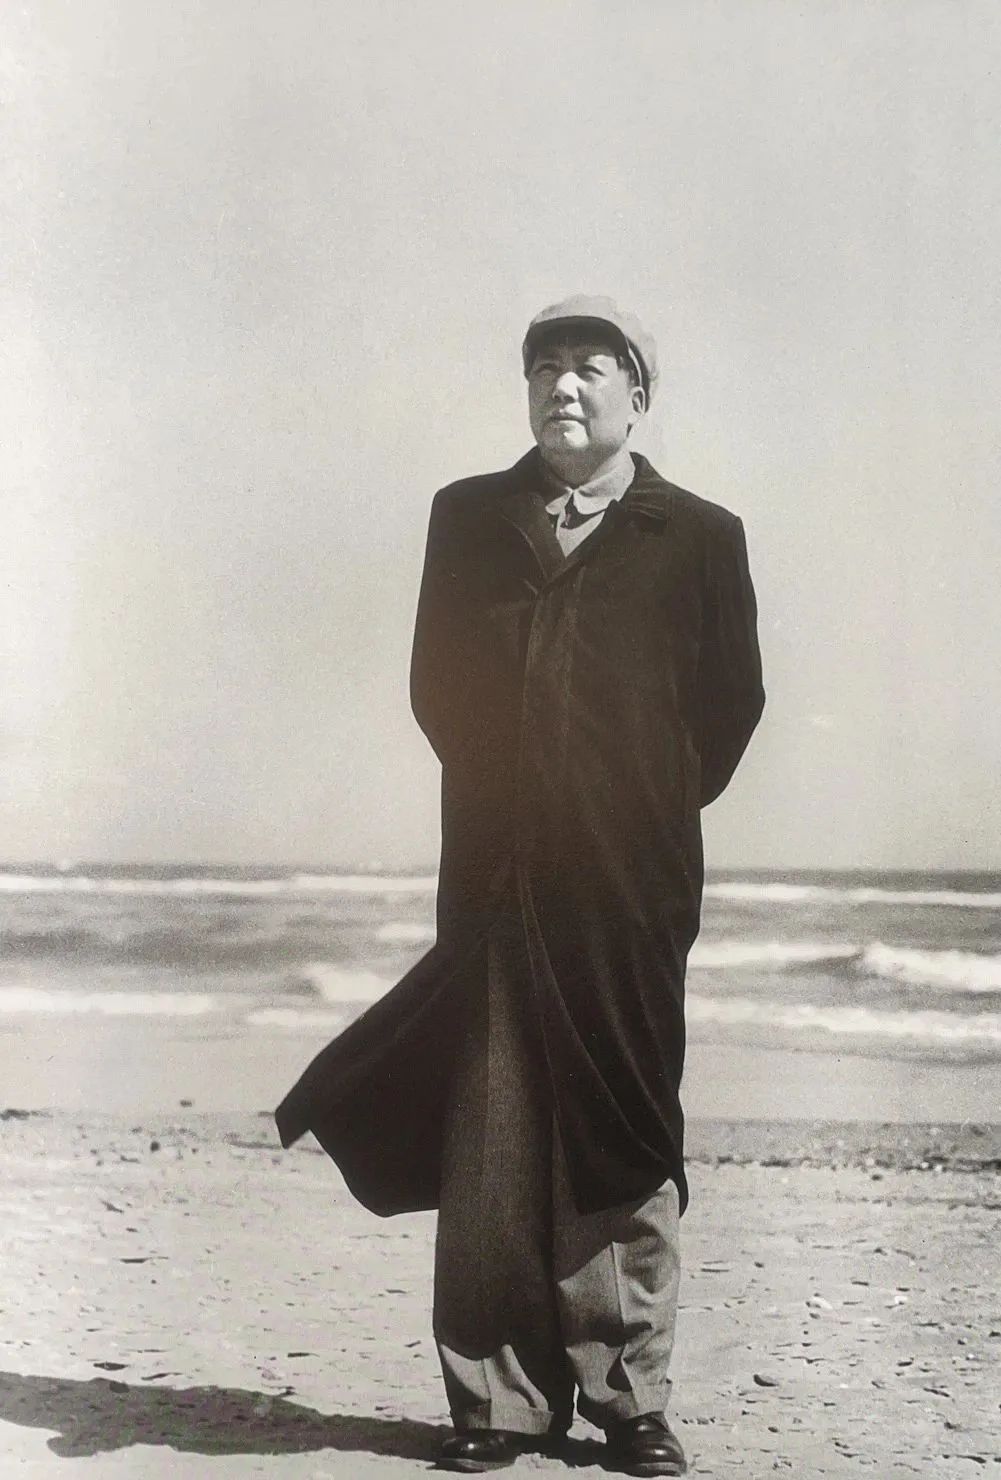 回顾100张照片毛泽东主席一生难忘的瞬间